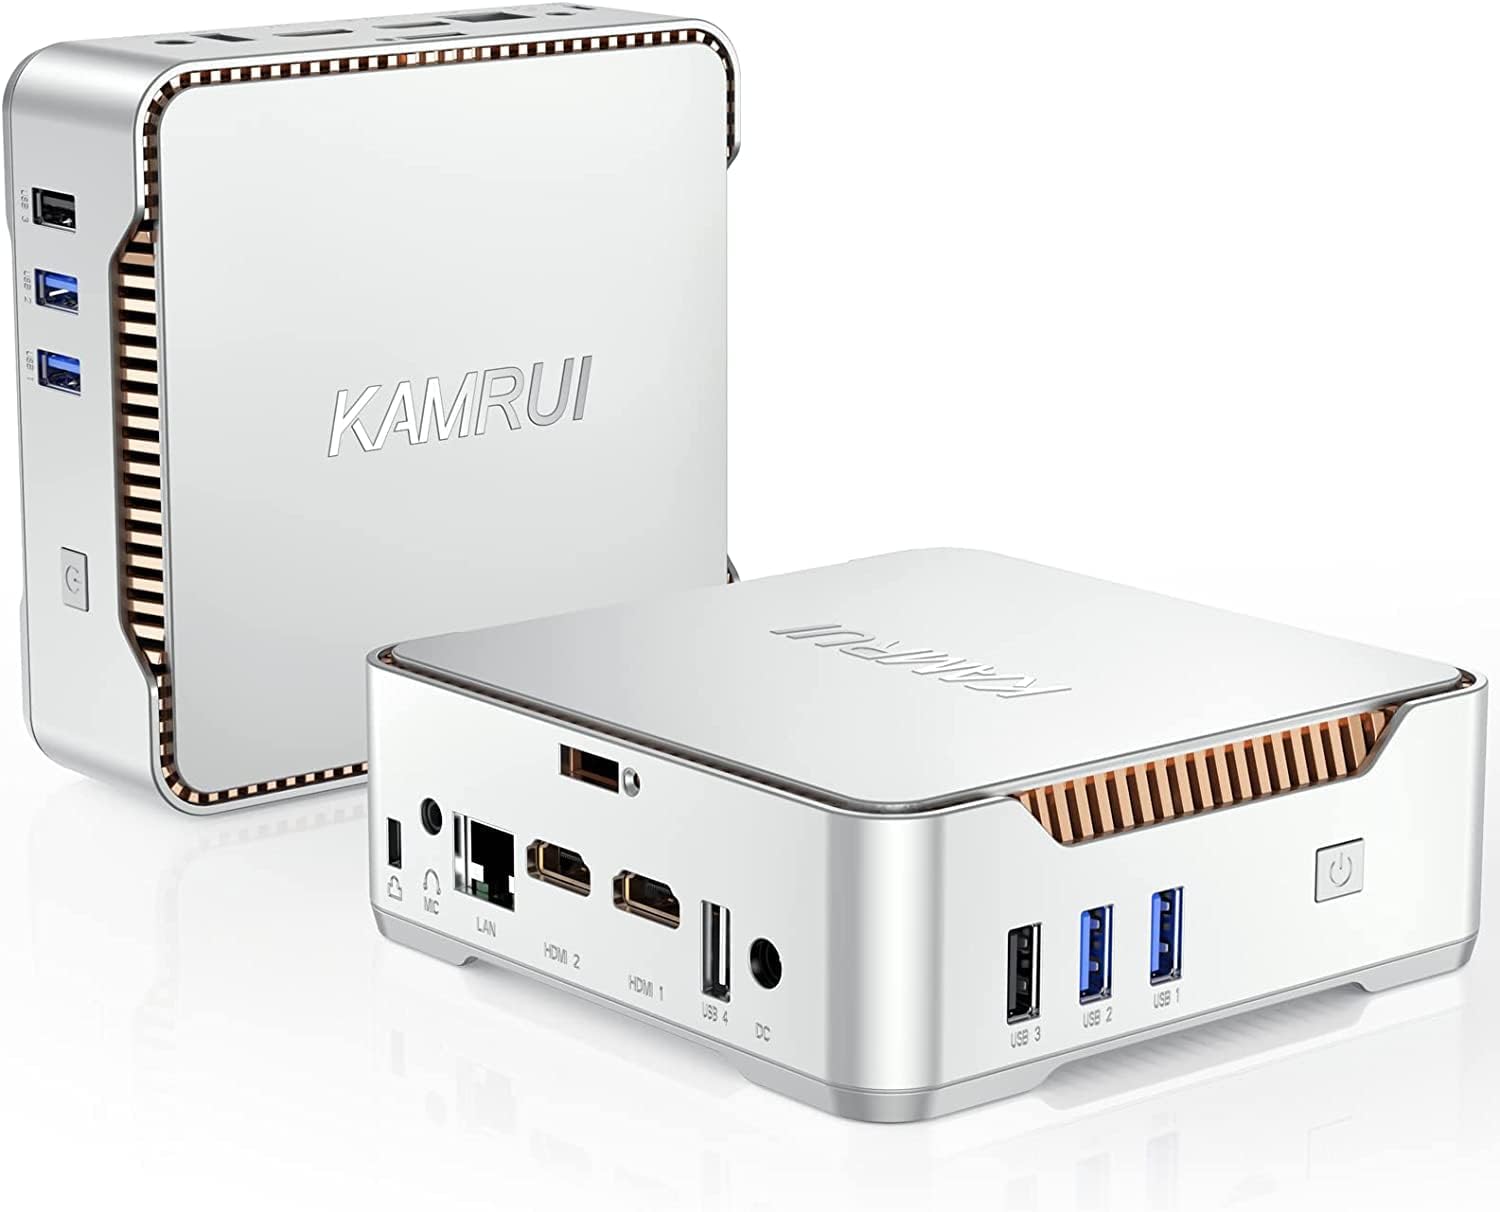 KAMRUI Mini PC,12th Intel Alder Lake- N95 up to 3.4 GHz,16GB RAM+512GB M.2 SSD, Mini Computer Support 2.5 SATA SSD,WiFi 2.4G/5G,Bluetooth4.2,Triple Display,4K